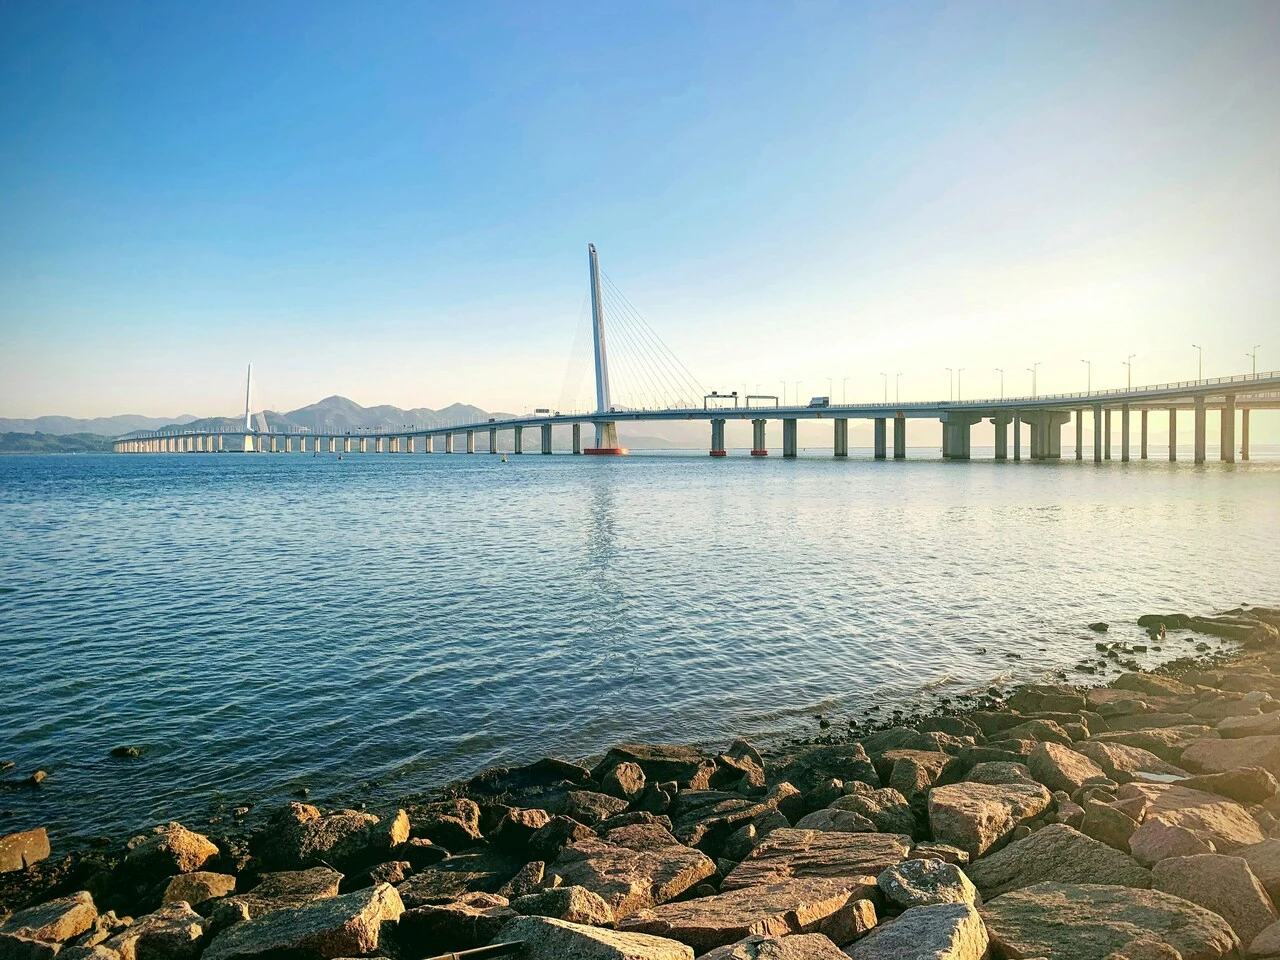 Shenzhen Bay Port (SZ side) photo